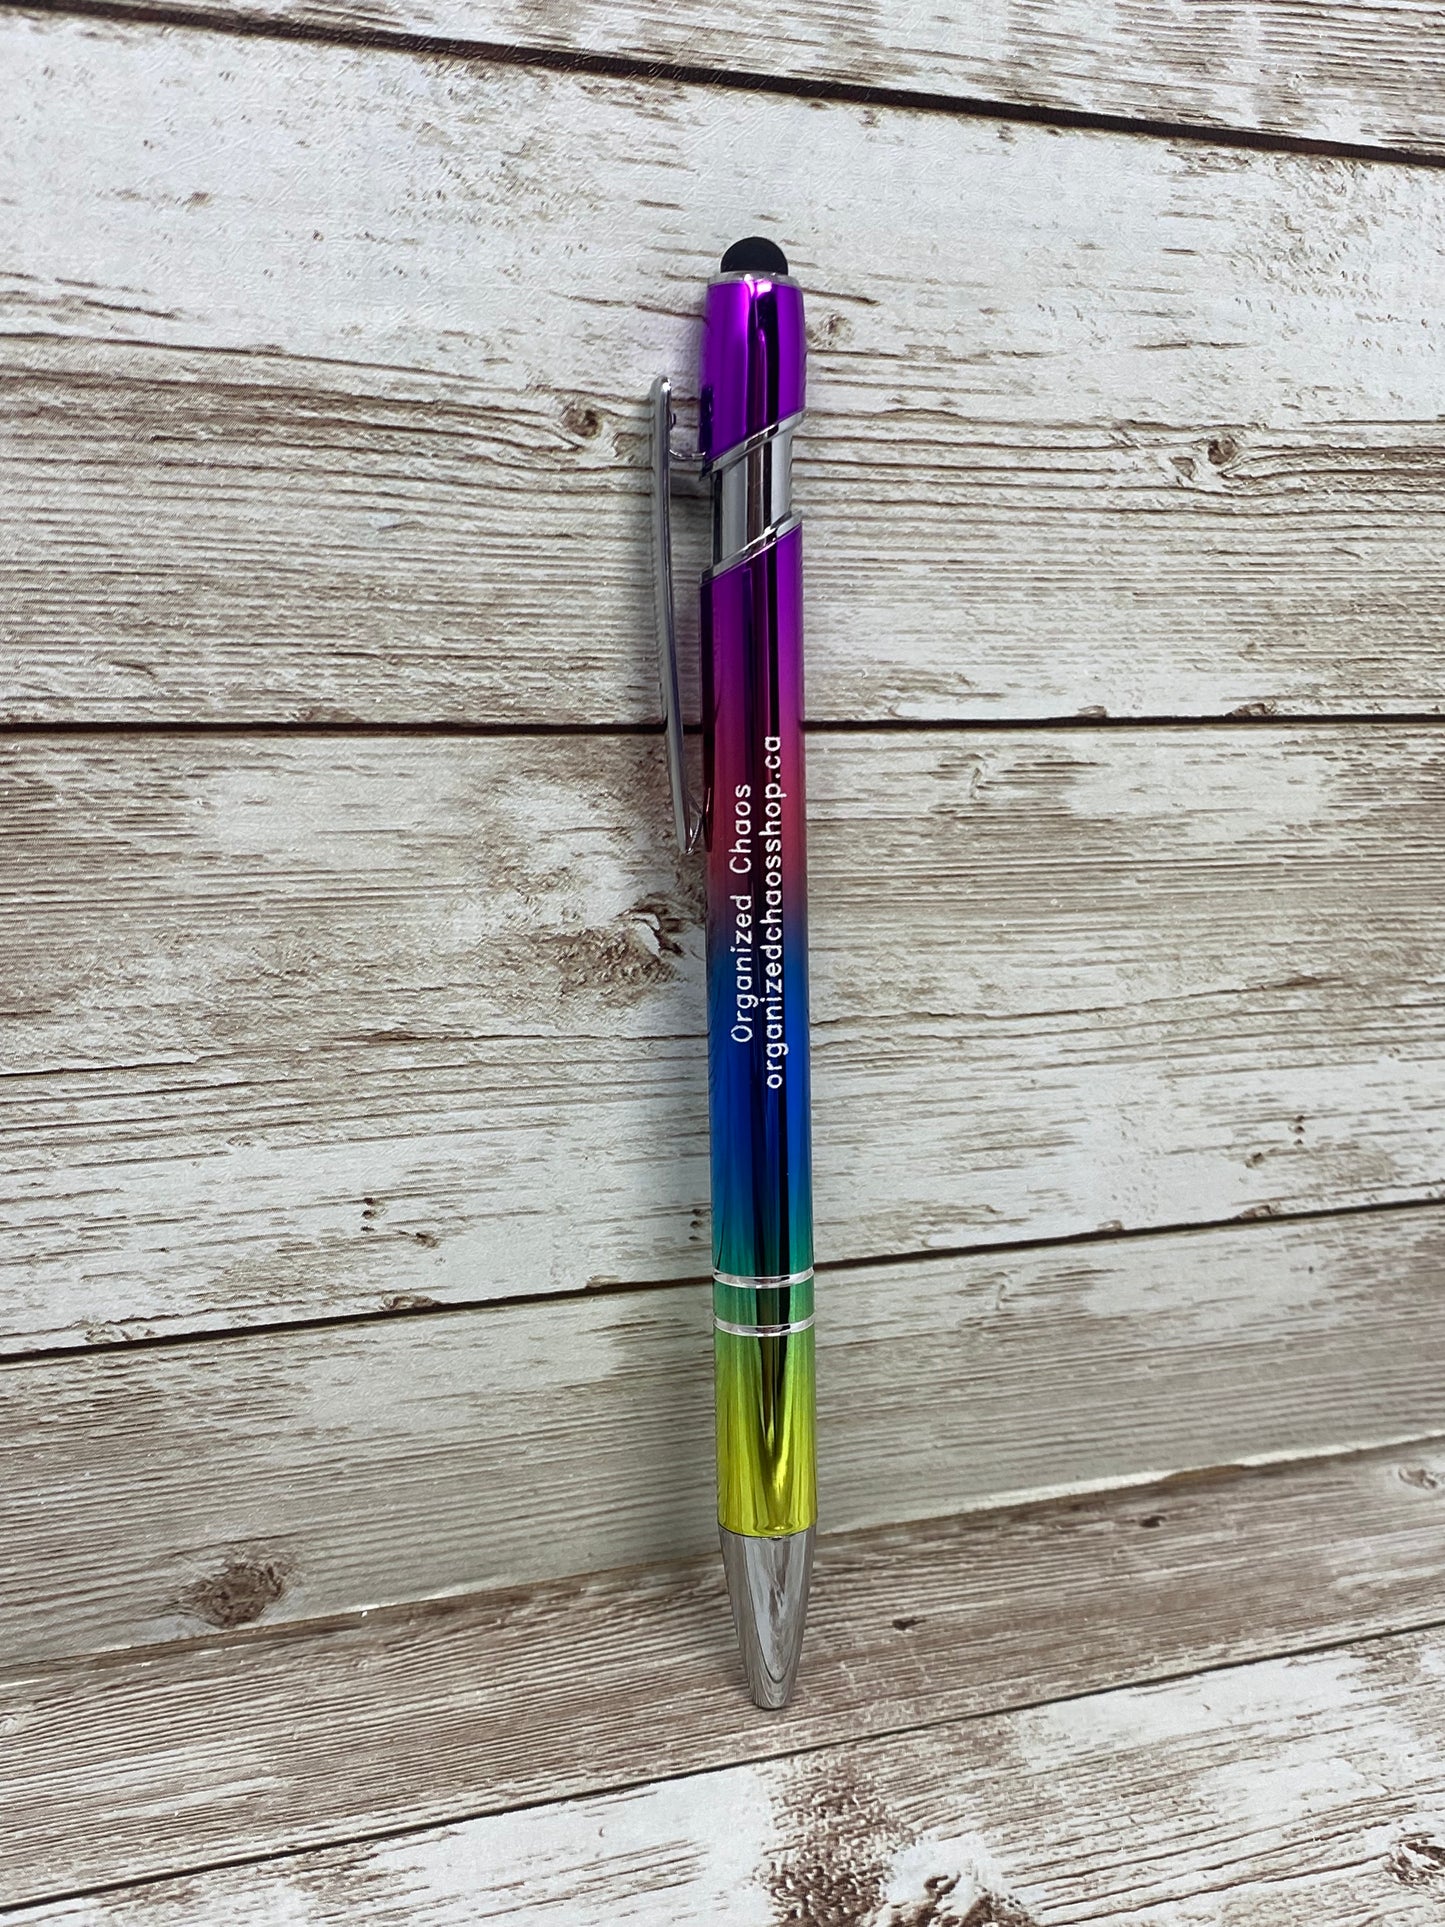 Specialty Pens